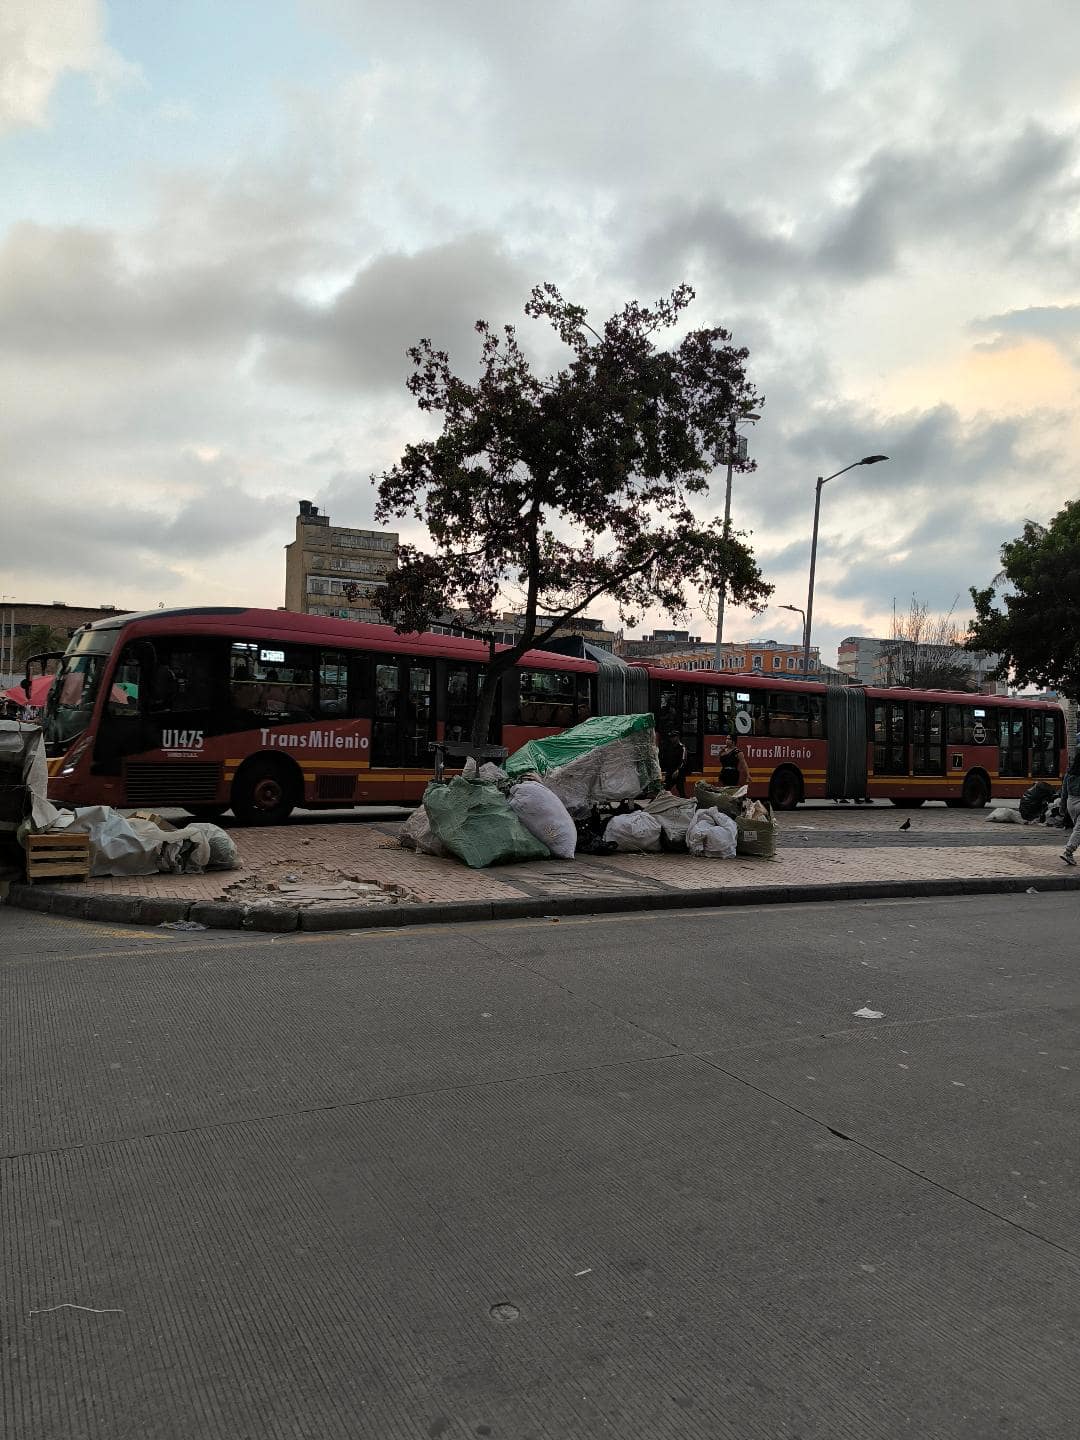 Červený autobus jazdí počas západu slnka. Vedľa neho sú na zemi hodené odpadky.